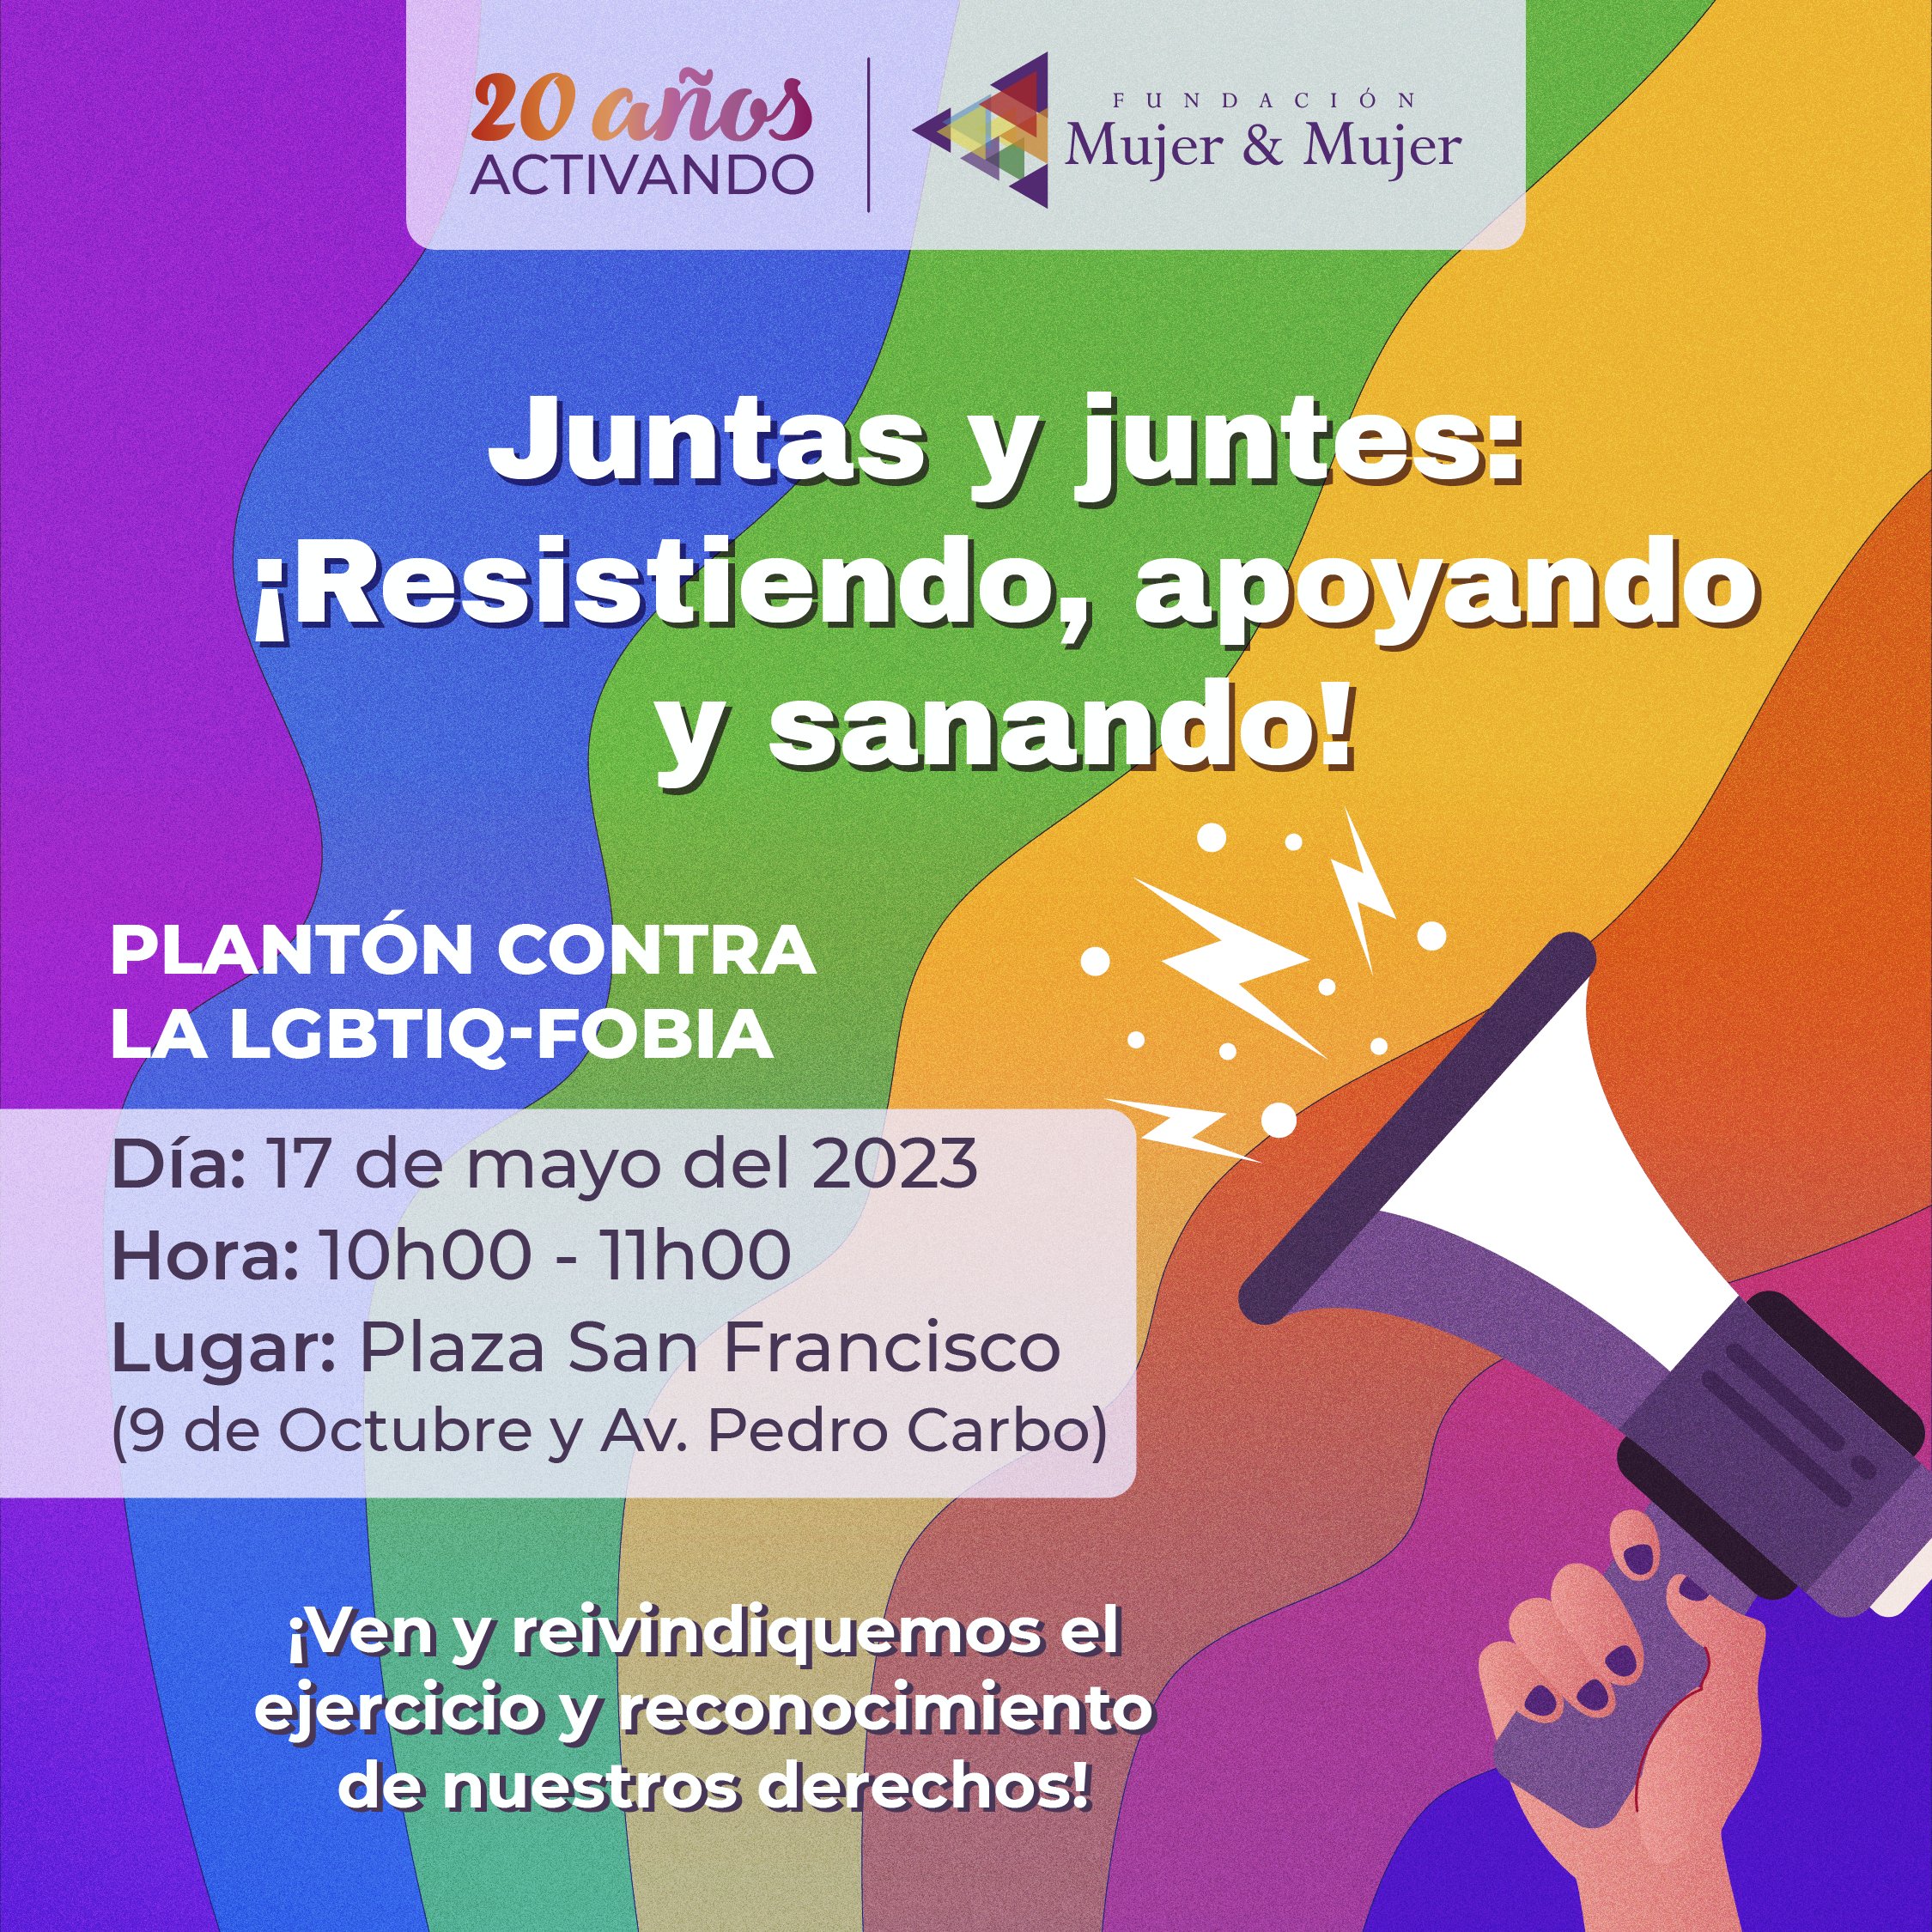 Imagen de promoción del Plantón contra la LGBTIQ+fobia en Ecuador.